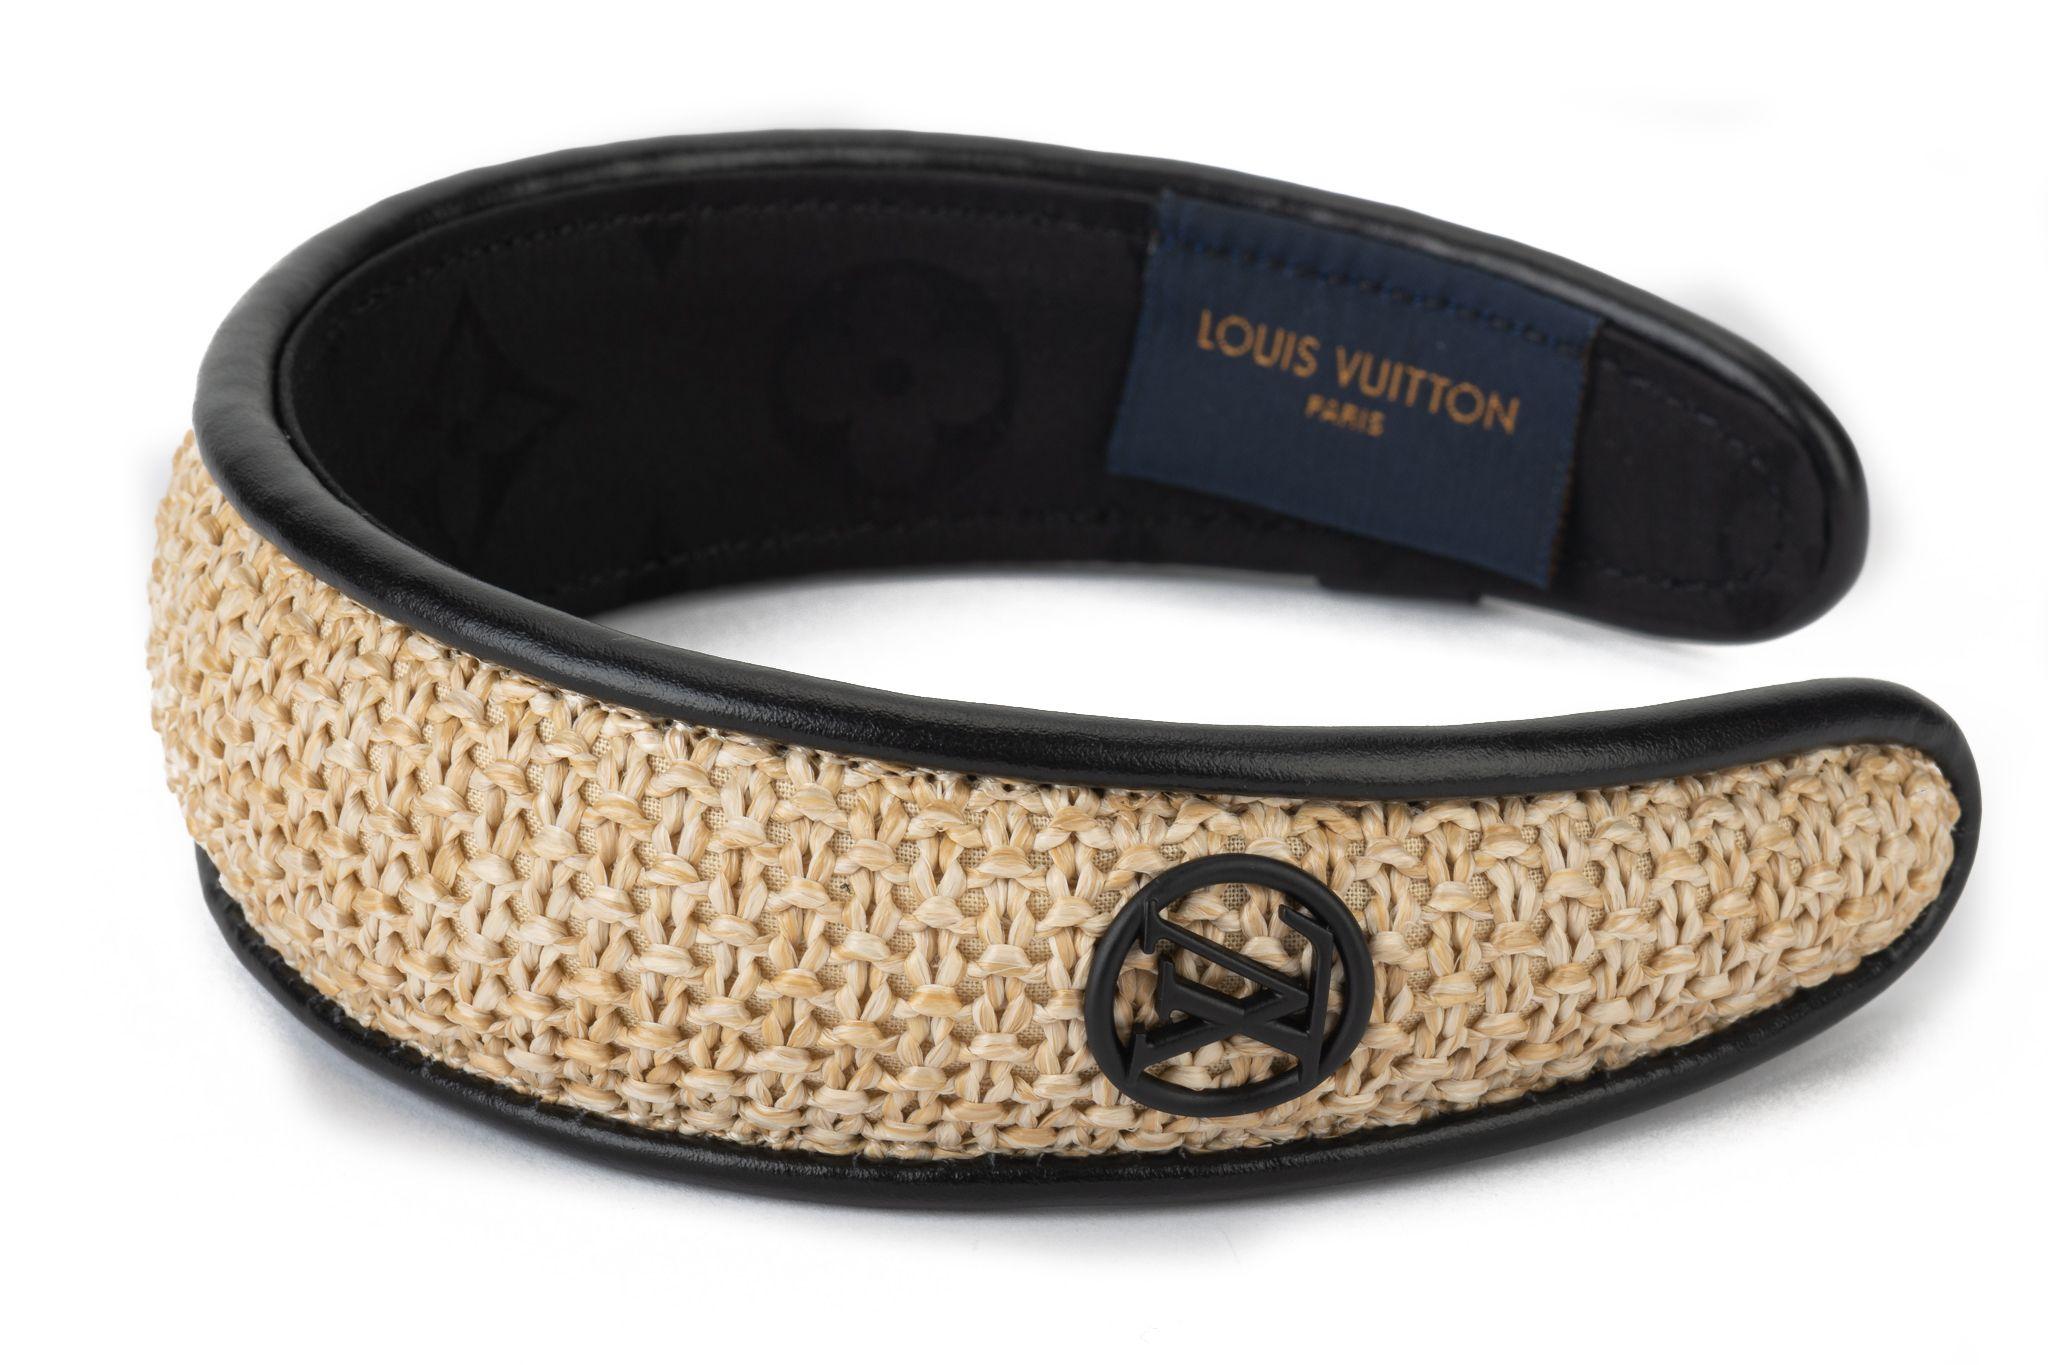 Louis Vuitton brandneues schwarzes Leder- und Baststirnband, rundes LV-Logo. Eine Größe für alle. Kommt mit Anhänger, Original-Schutzhülle und Box.
